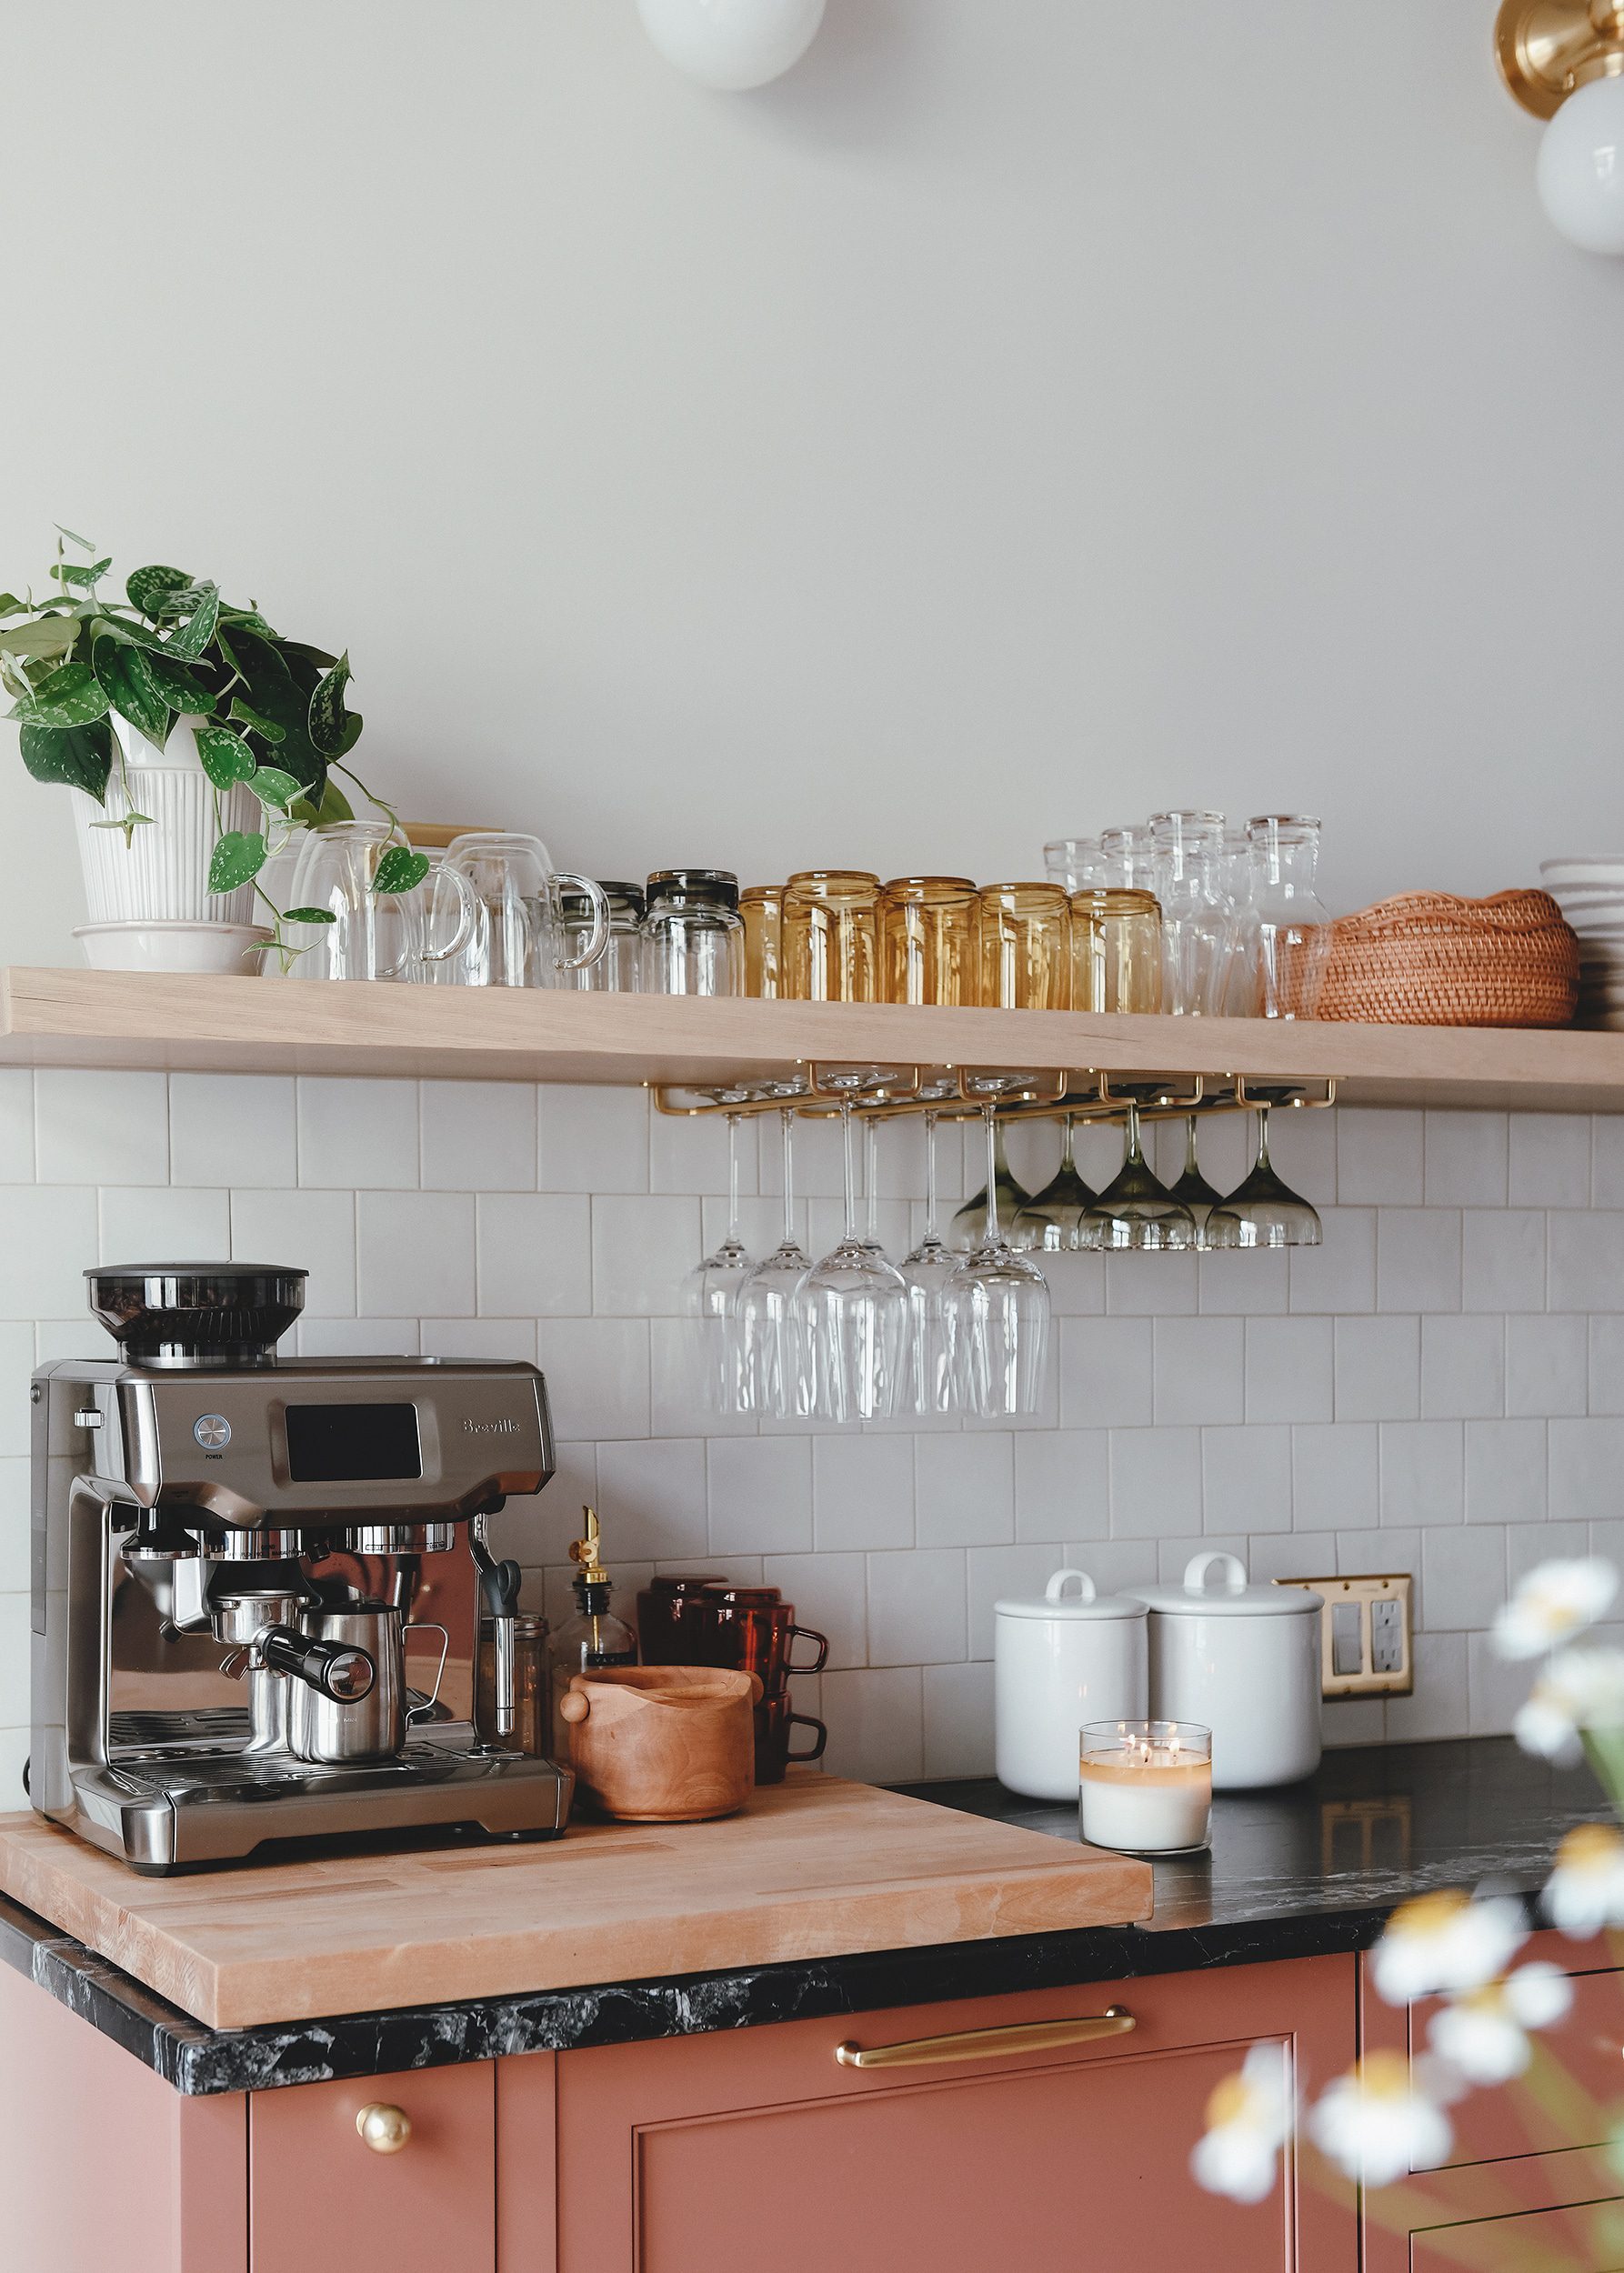 Kim & Scott hebben een compacte, maar erg stjilvolle en praktische koffiehoekje ingericht in hun keuken, waar alles binnen handbereik is. | Bron: Yellowbrickhome.com